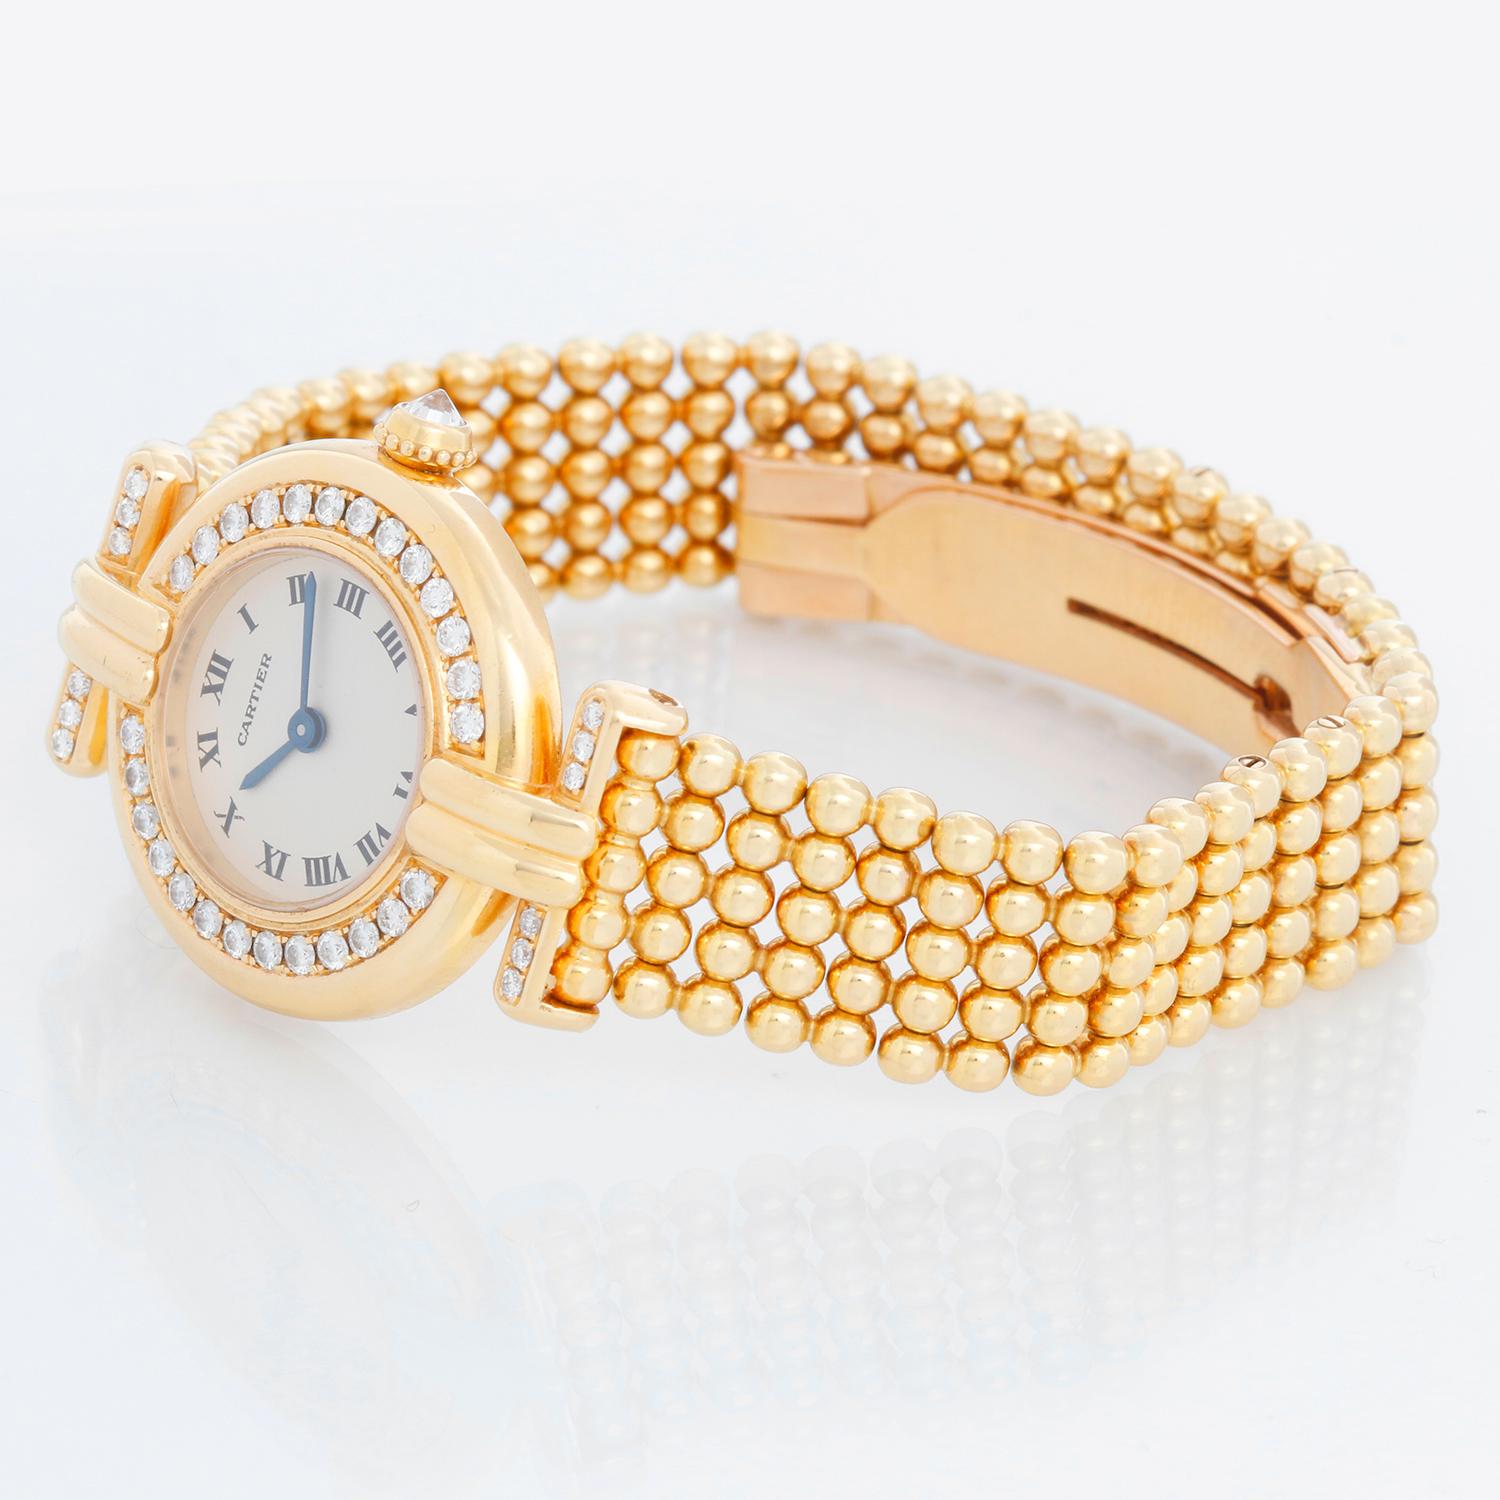 Cartier 18k Gelbgold Damen Colisee Diamond Watch - Quarz. 18k Gelbgold Gehäuse (24mm) mit Fabrik Diamant Lünette und Bandanstöße. Elfenbein Zifferblatt mit römischen Ziffern. 18k Gold Perlen Link Cartier Armband mit deployant; dies wird ein 6 Zoll